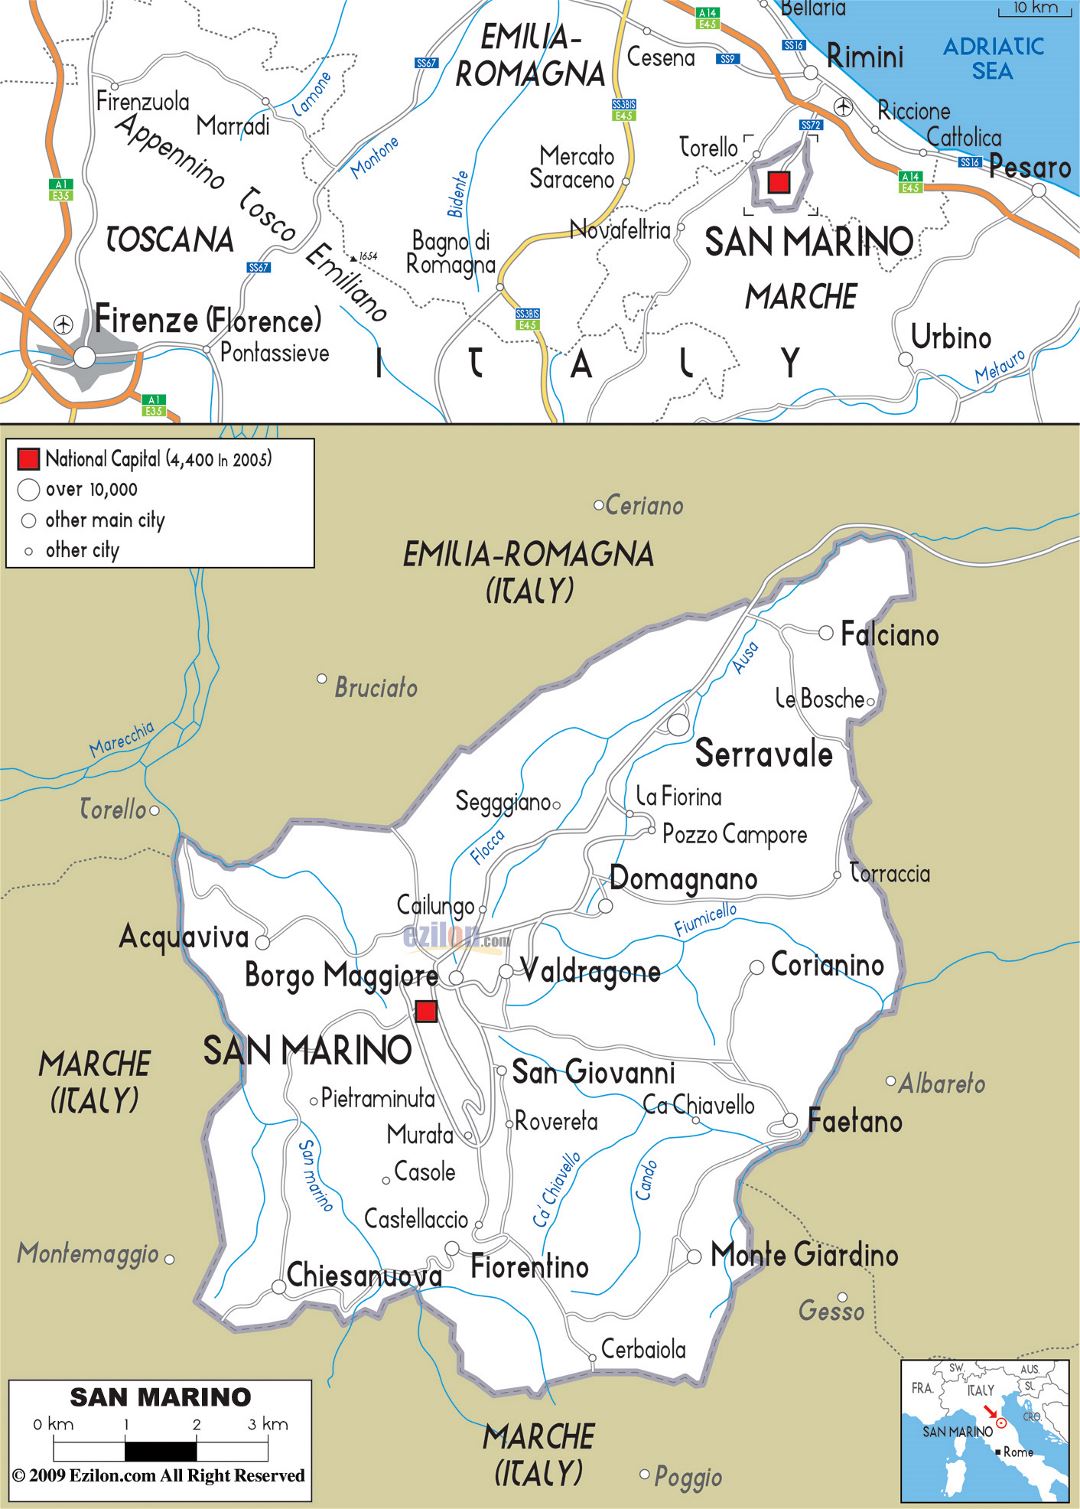 Grande hoja de ruta de San Marino con ciudades